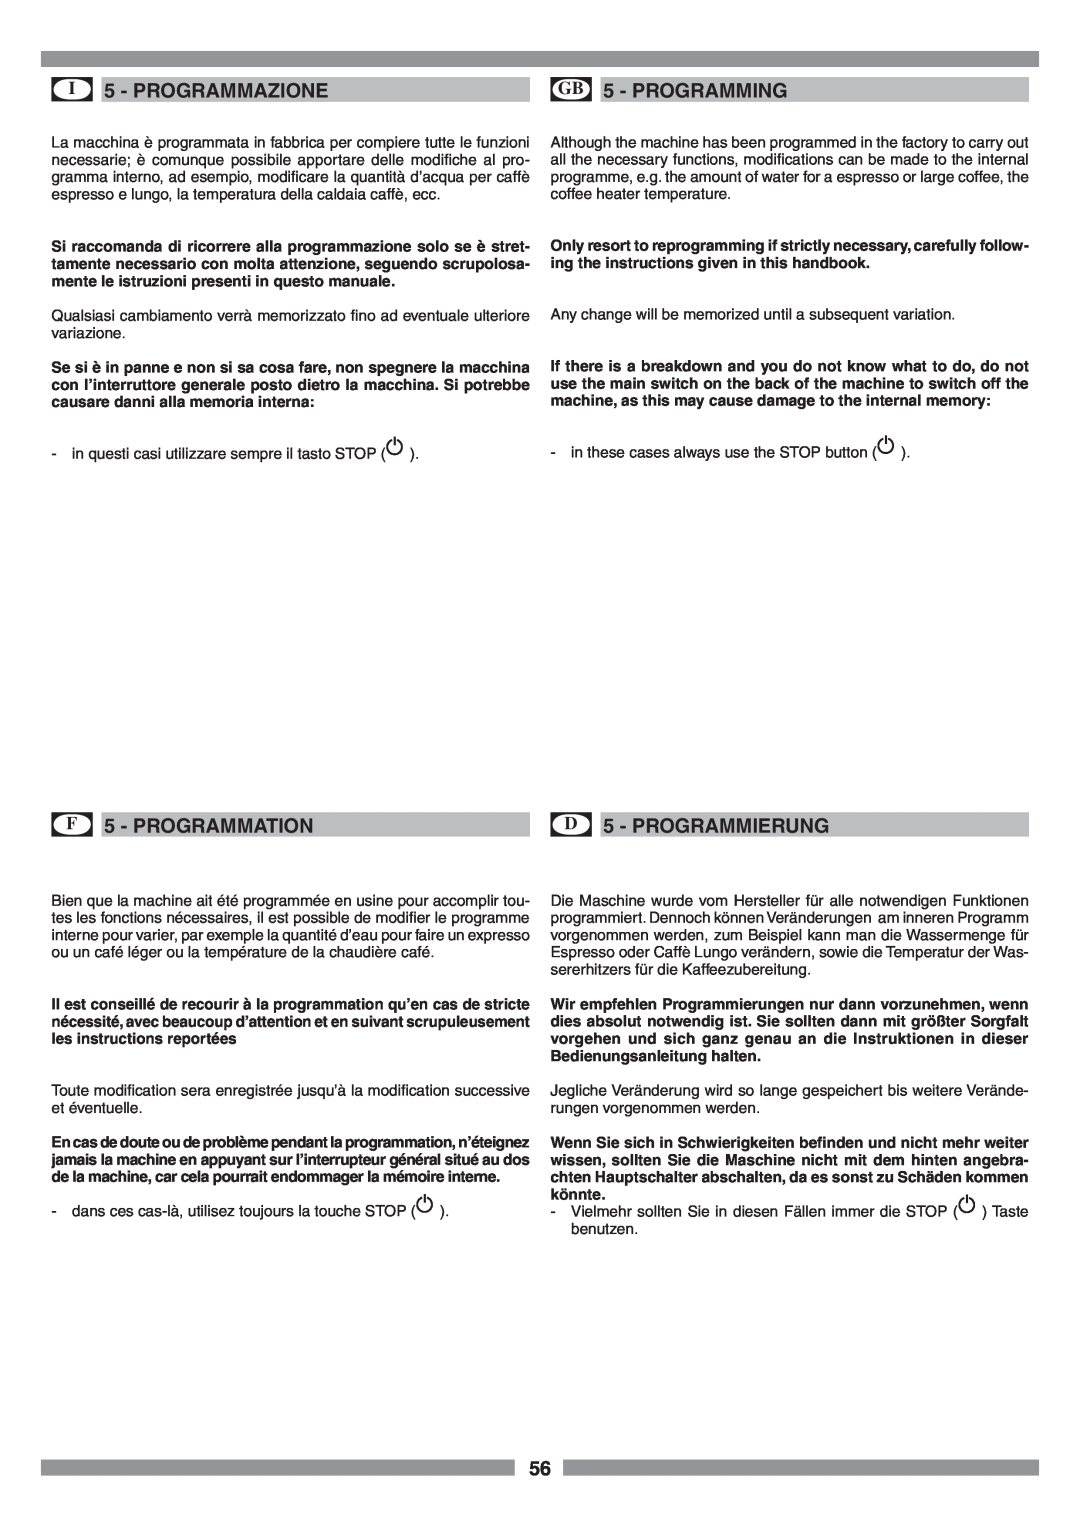 Smeg SCM1 manual I 5 - PROGRAMMAZIONE, GB 5 - PROGRAMMING, F 5 - PROGRAMMATION, D 5 - PROGRAMMIERUNG 